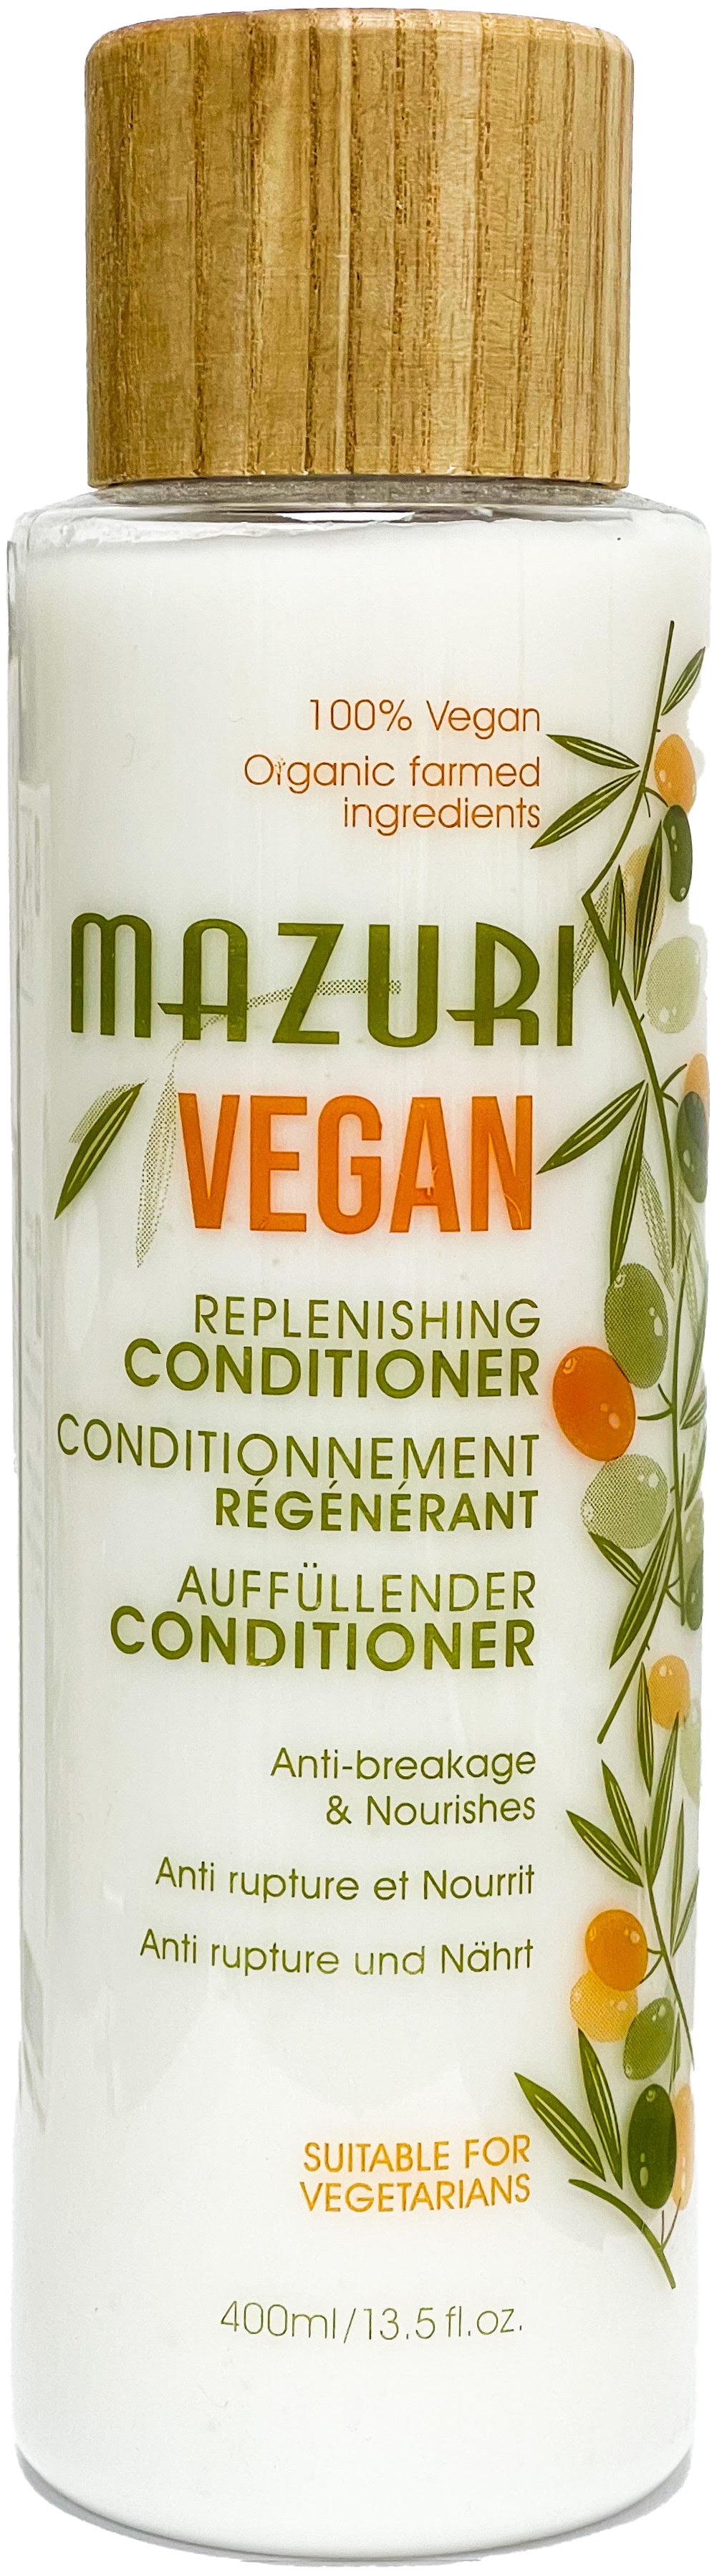 Mazuri - Vegan Replenishing Conditioner 400ml